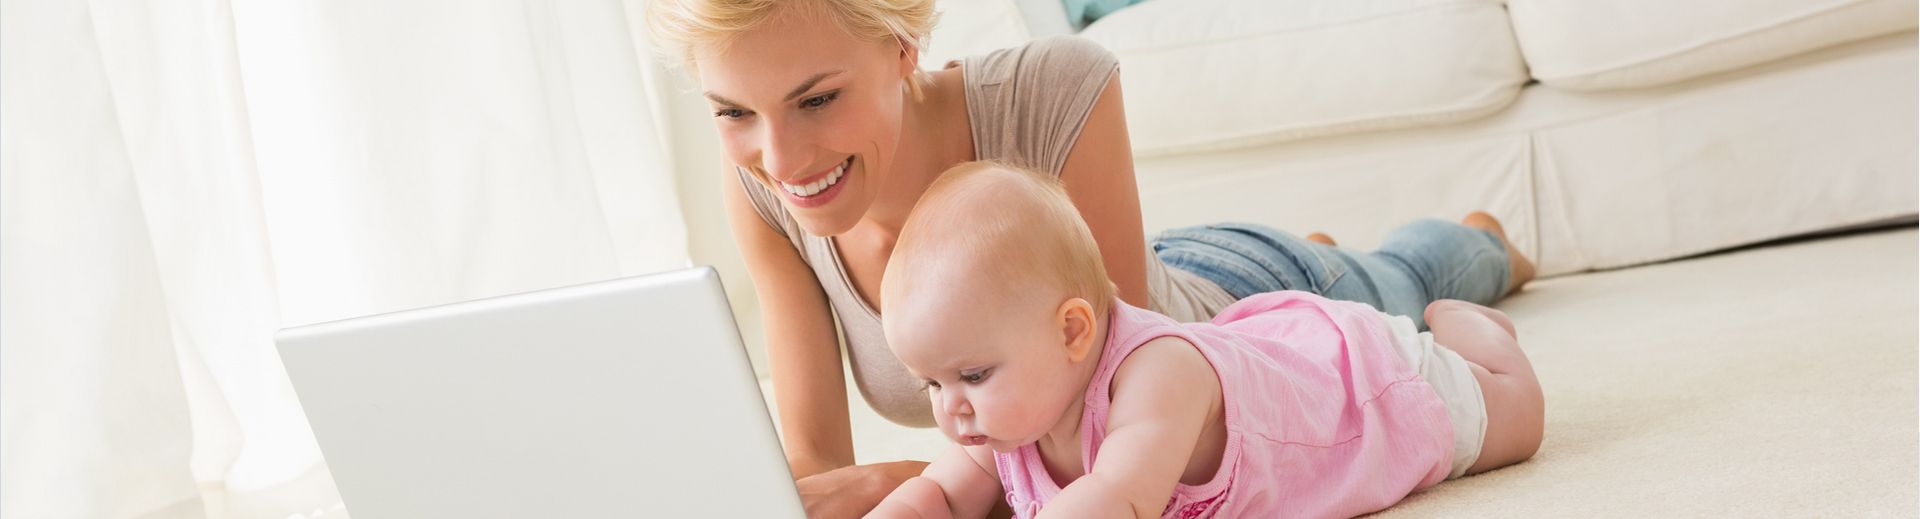 Mutter mit Baby vor einem Laptop